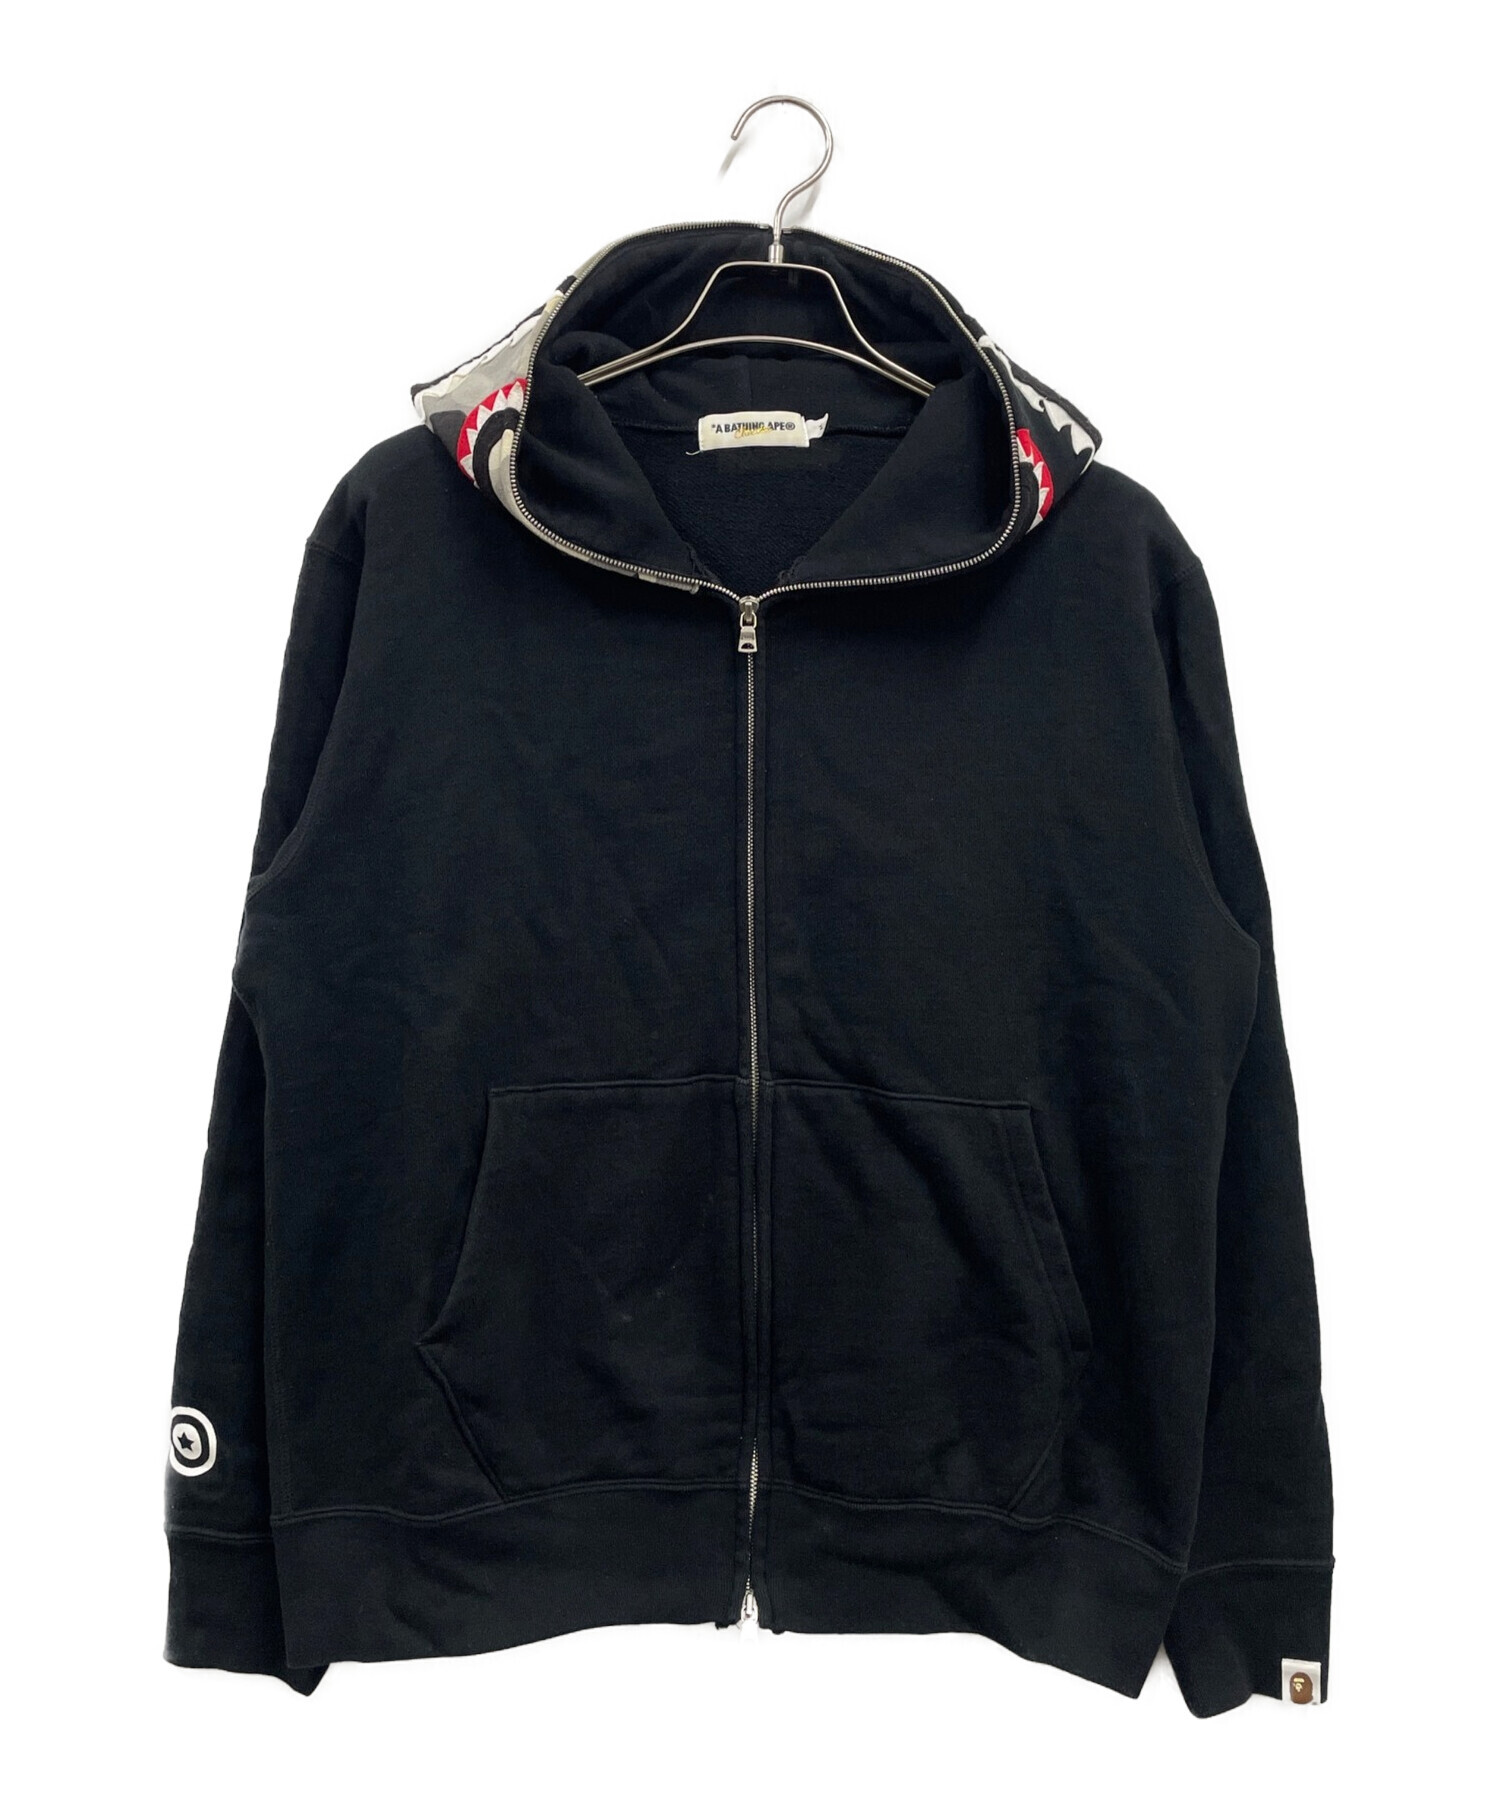 abathingape full zip hoodie身幅58cm